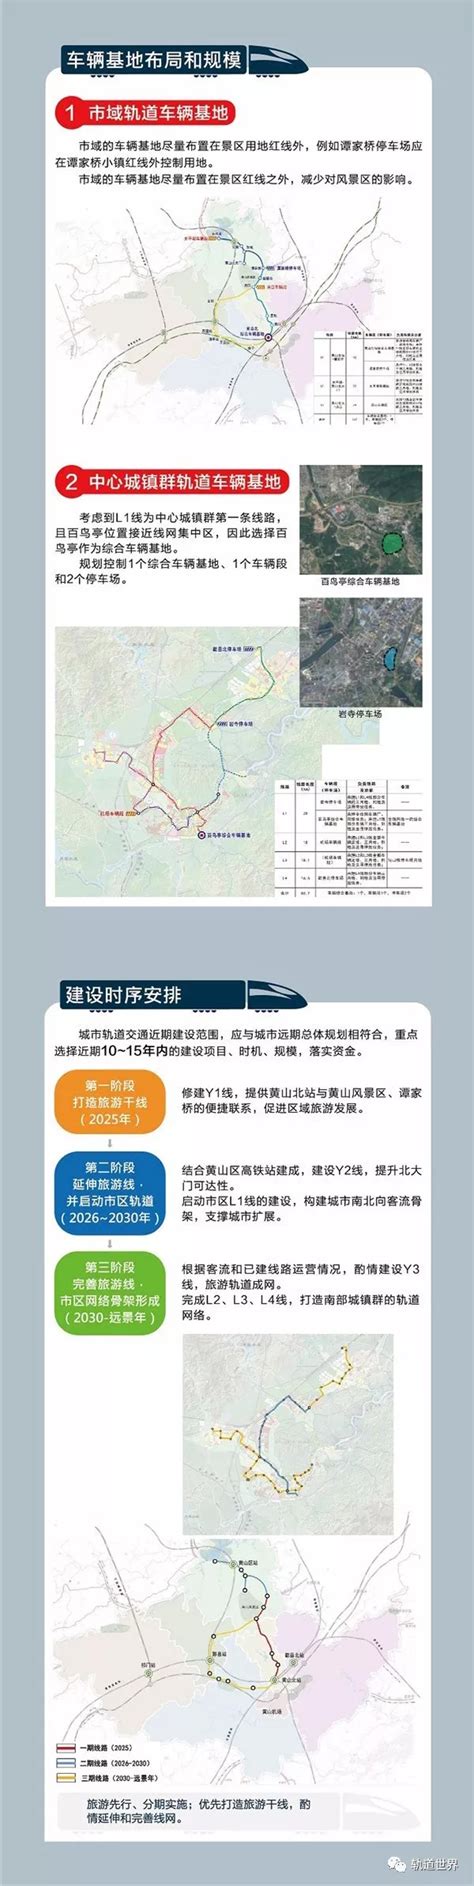 黄山市旅游轻轨T1线一期拟明年6月份开工建设,建设周期4年-黄山搜狐焦点